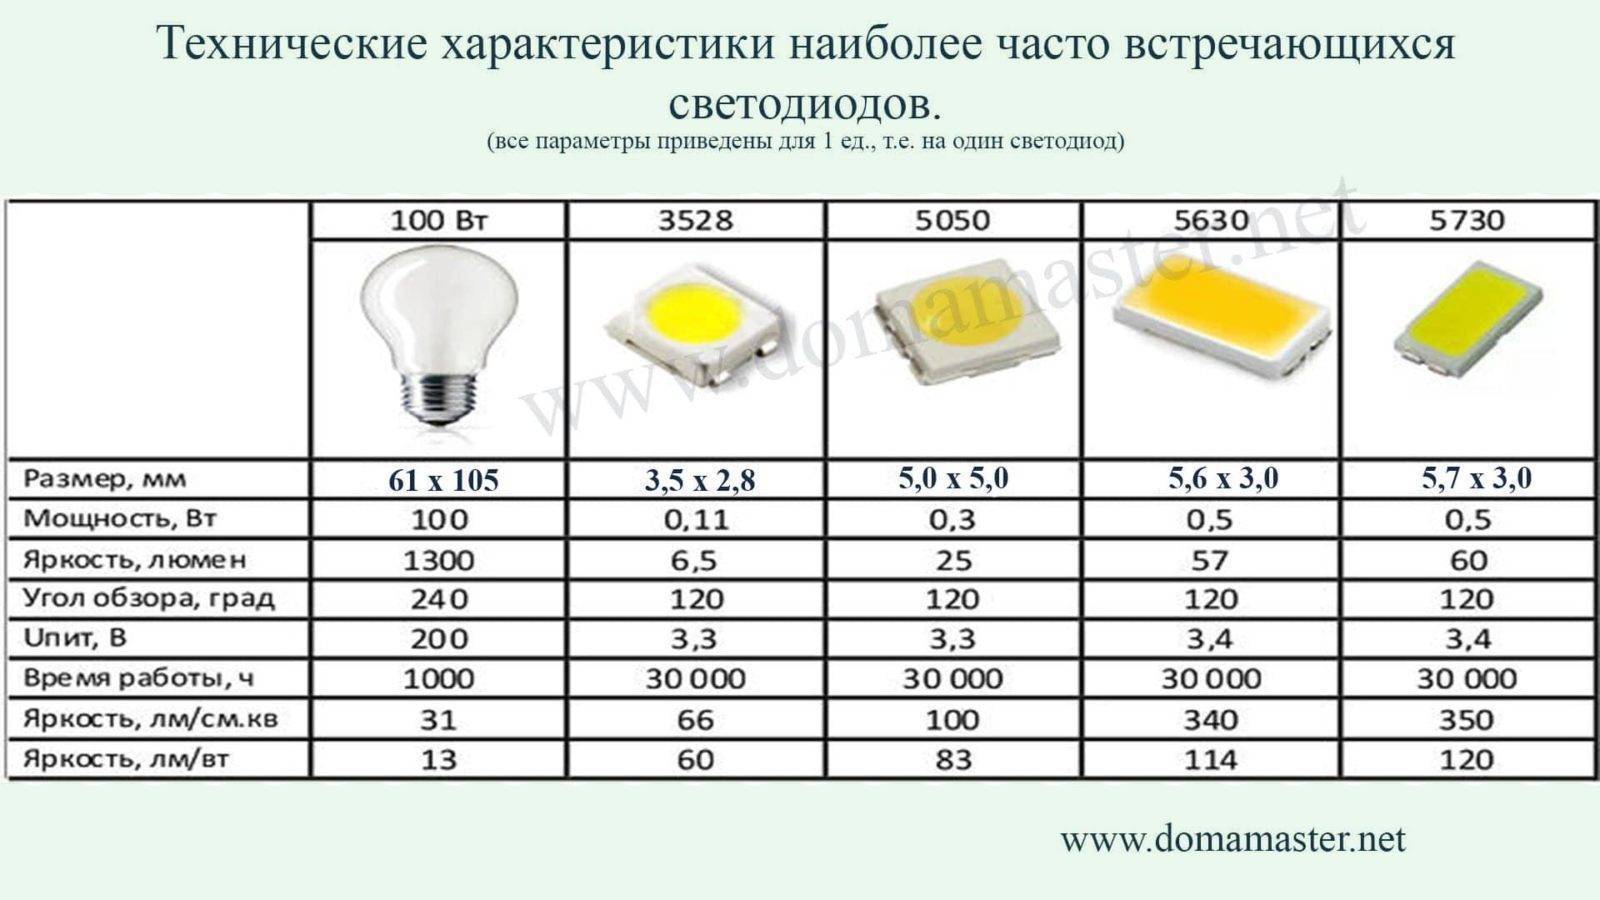 Светодиодные лампы, технические характеристики